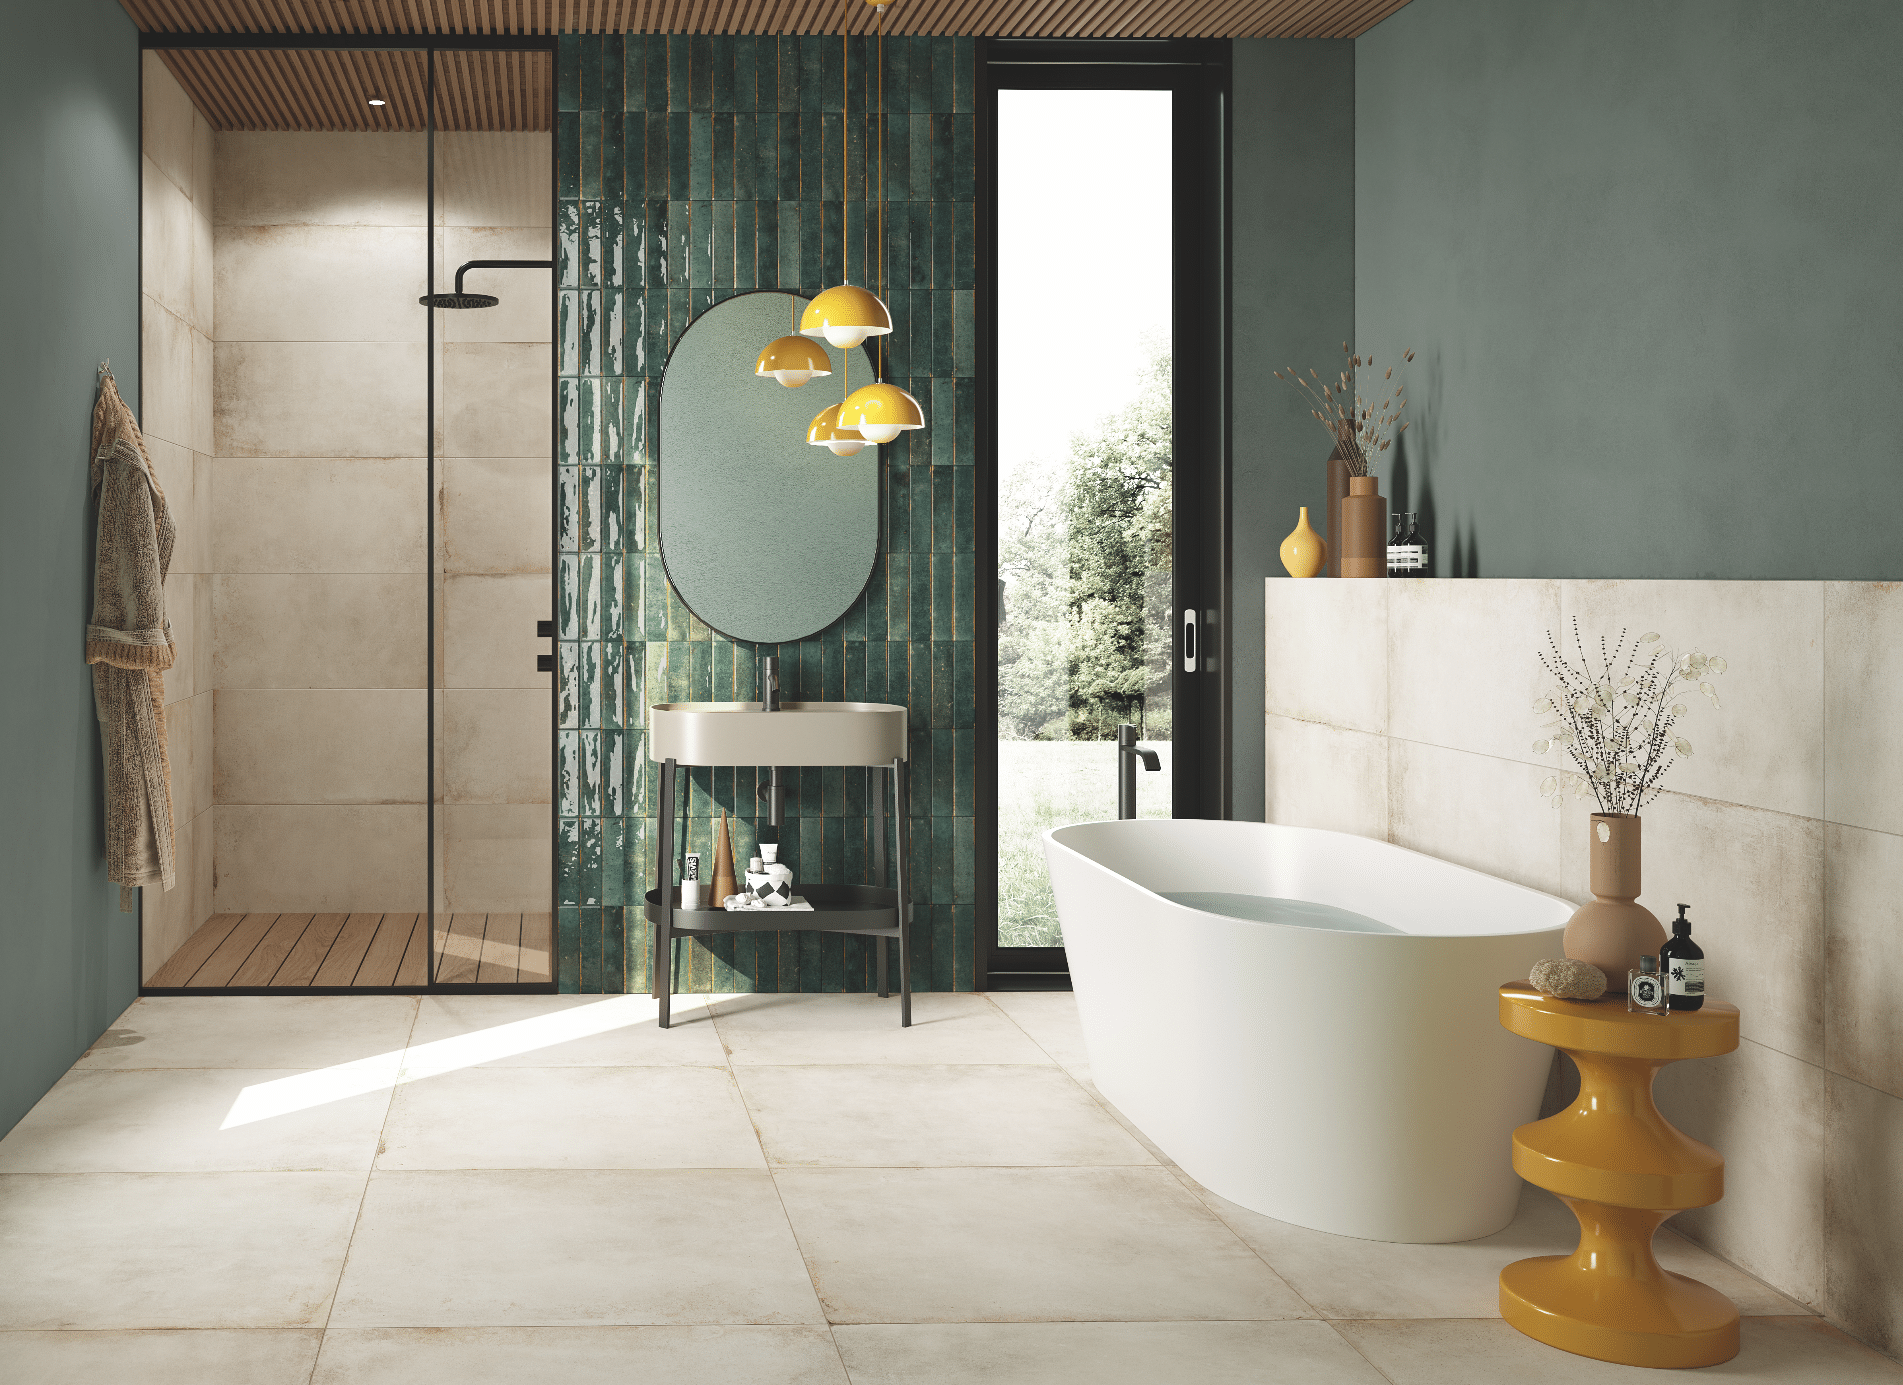 Fliesendorf zeigt ein Badezimmer mit hellem Fliesenboden und freistehender Badewanne in weiss mit einem Waschtisch und großem Spiegel vor einer grünen, gefliesten Wand.